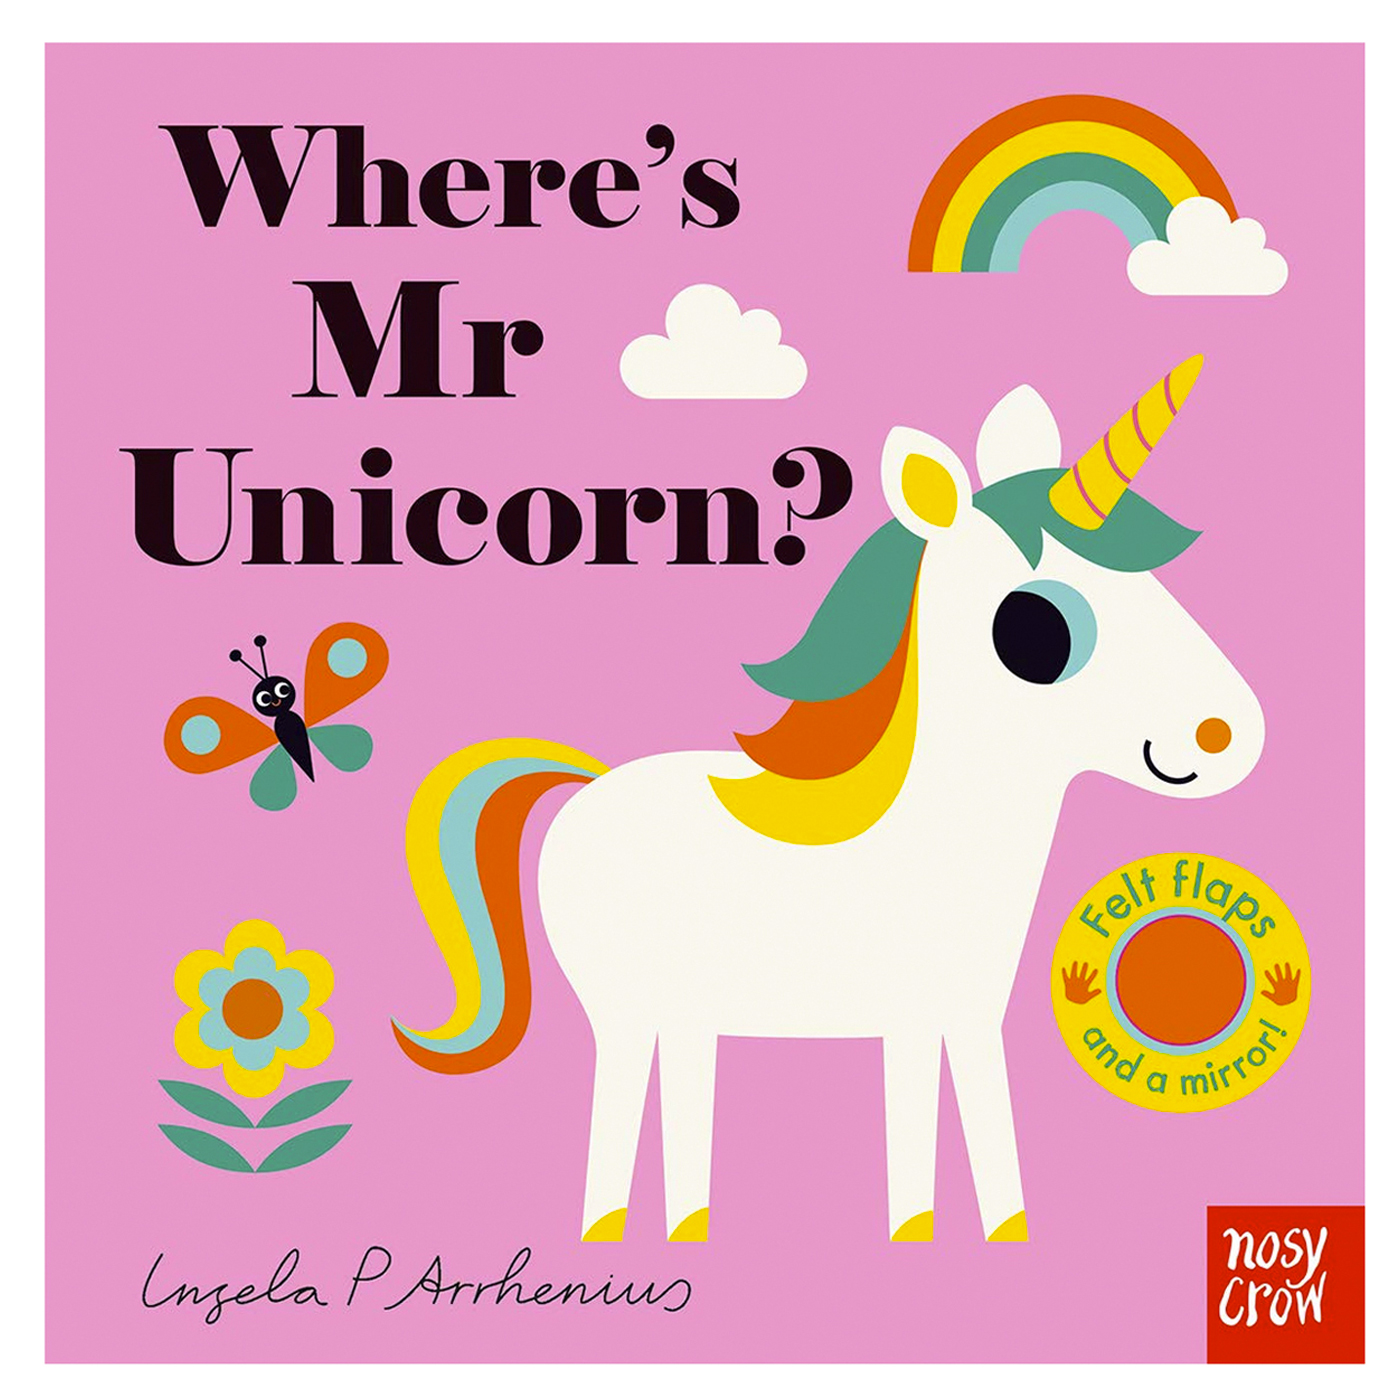  Where's Mr Unicorn?